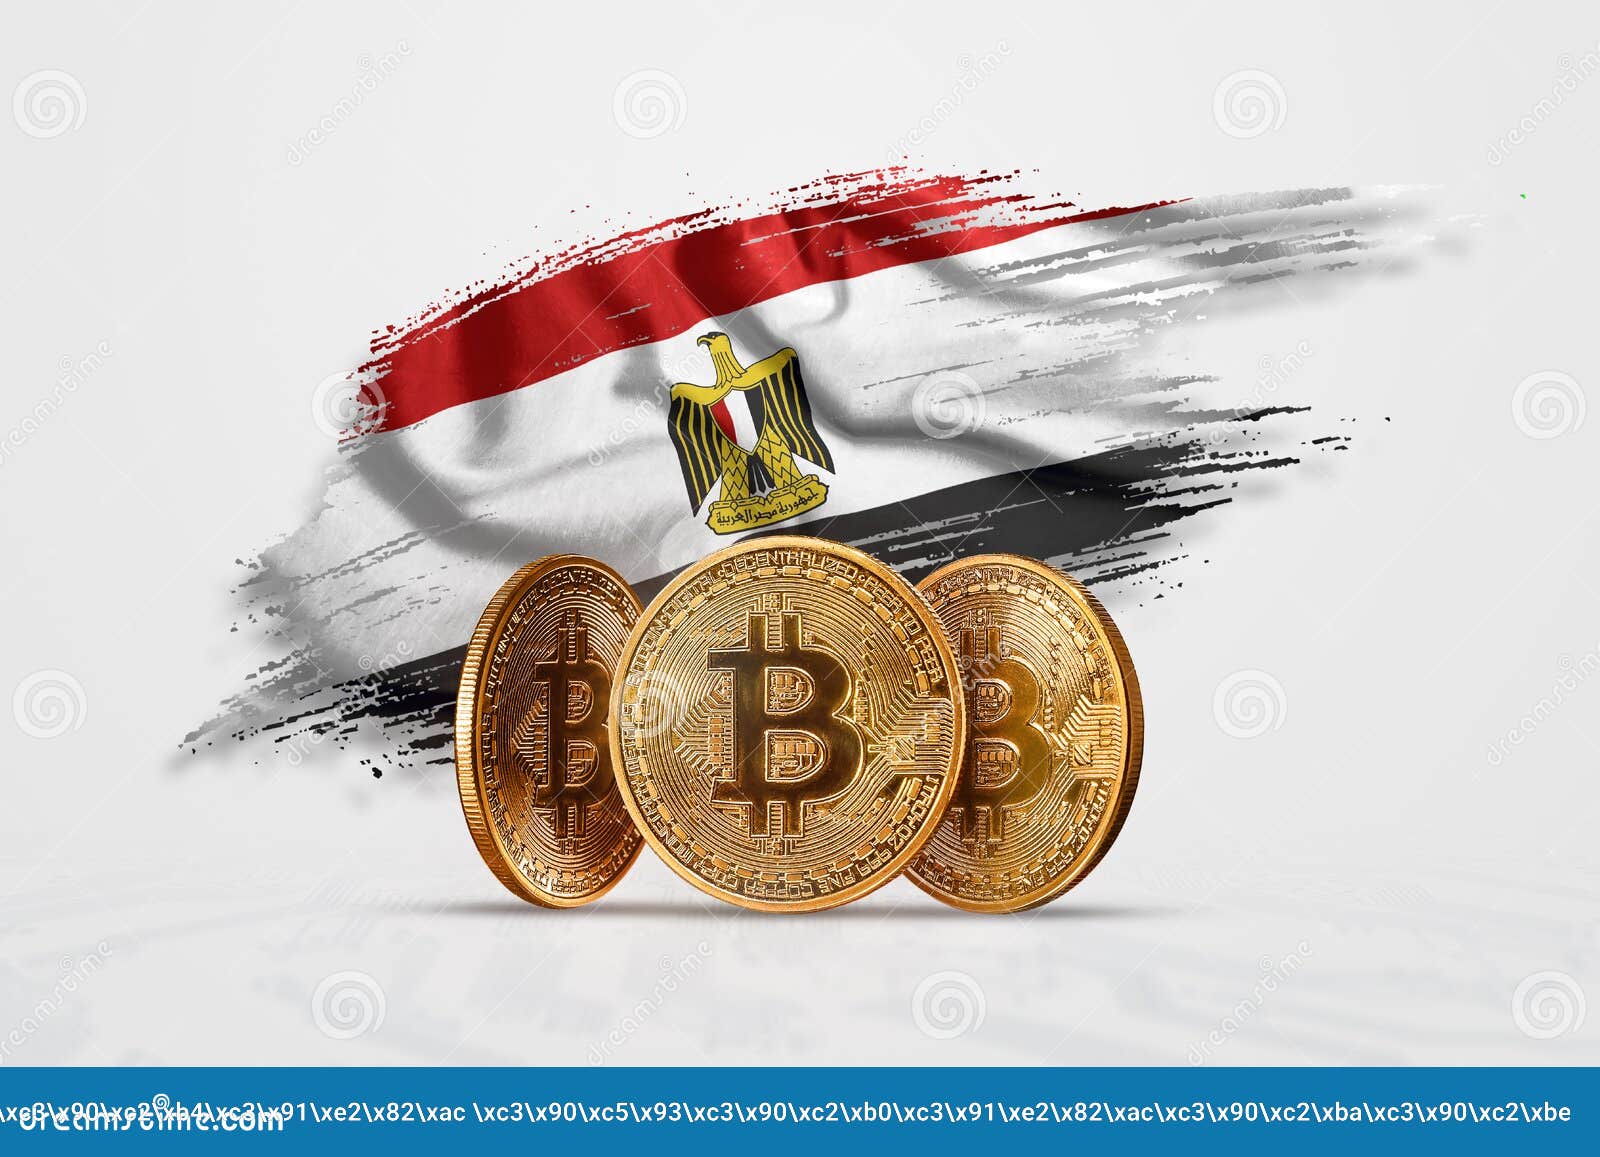 egipto bitcoin)